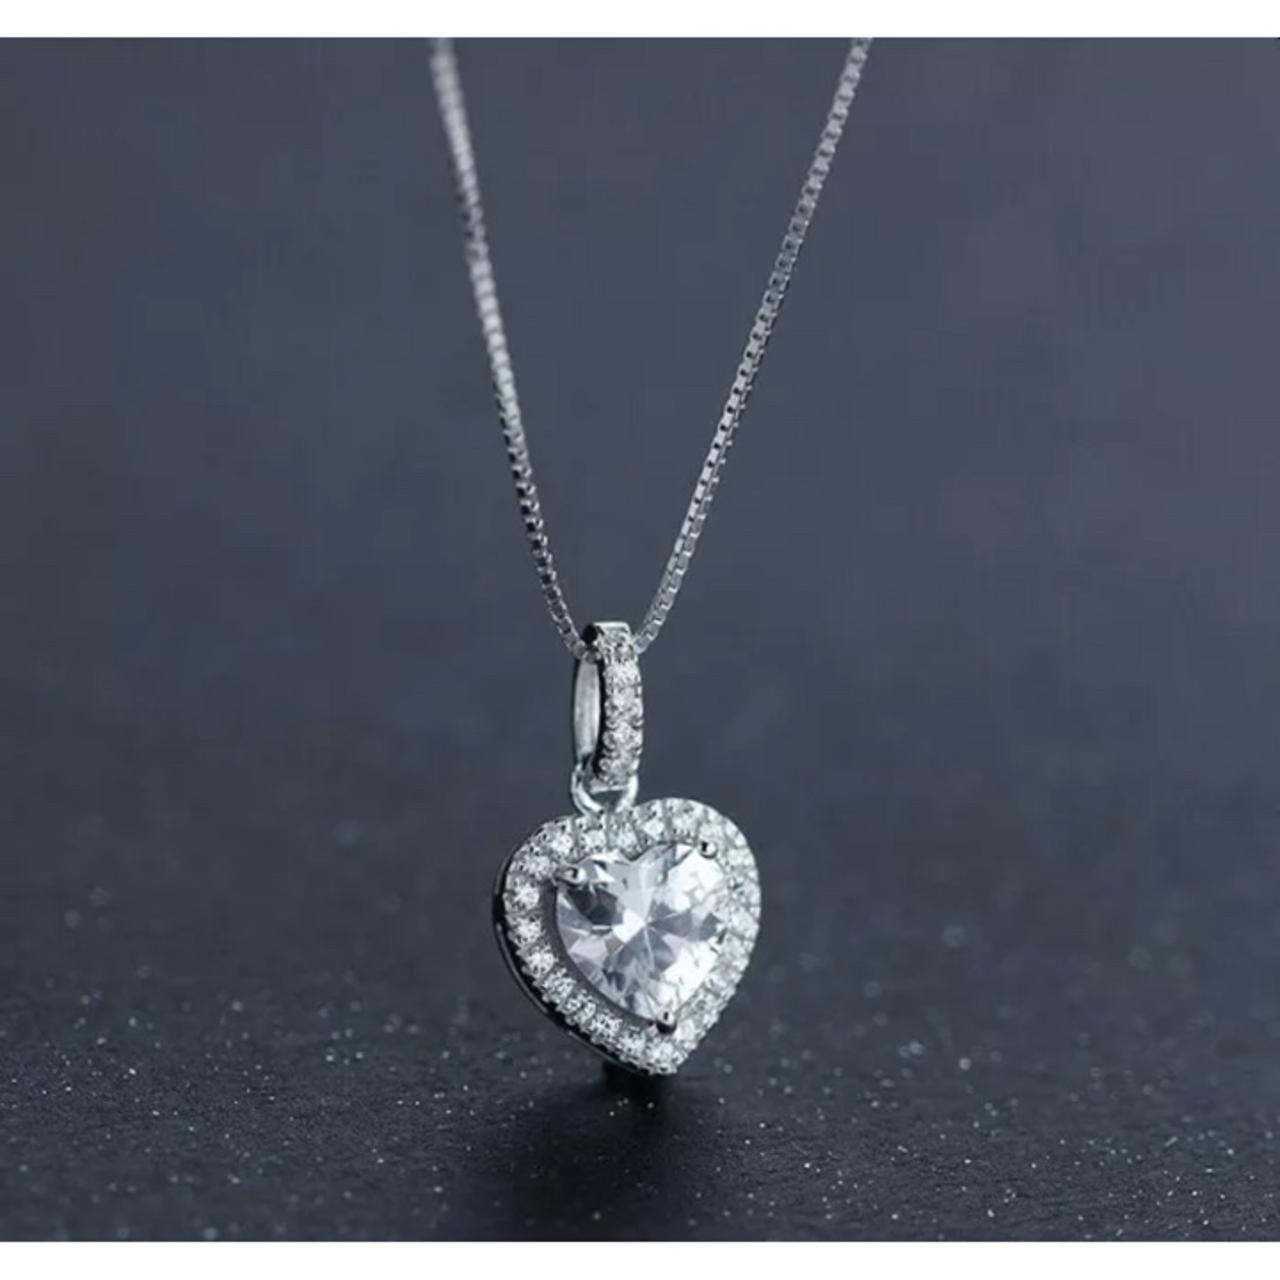 WARREN JAMES HEART necklace £10.00 - PicClick UK